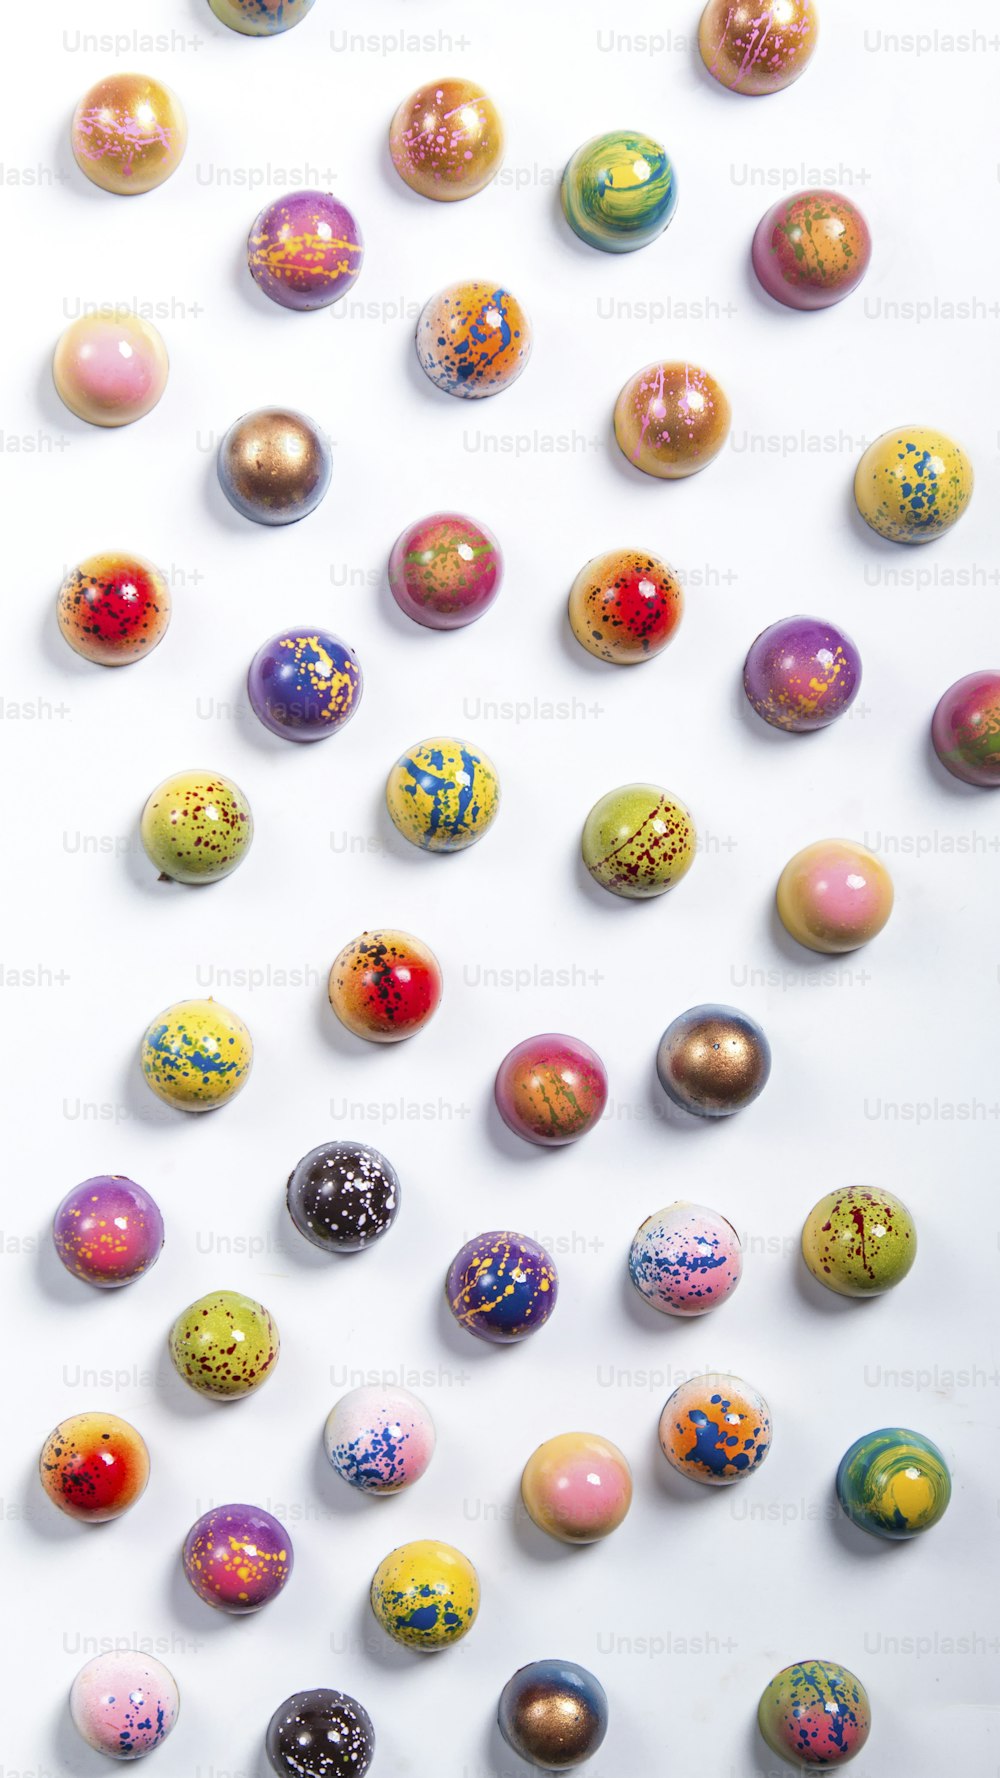 une surface blanche avec de nombreuses boules de couleurs différentes